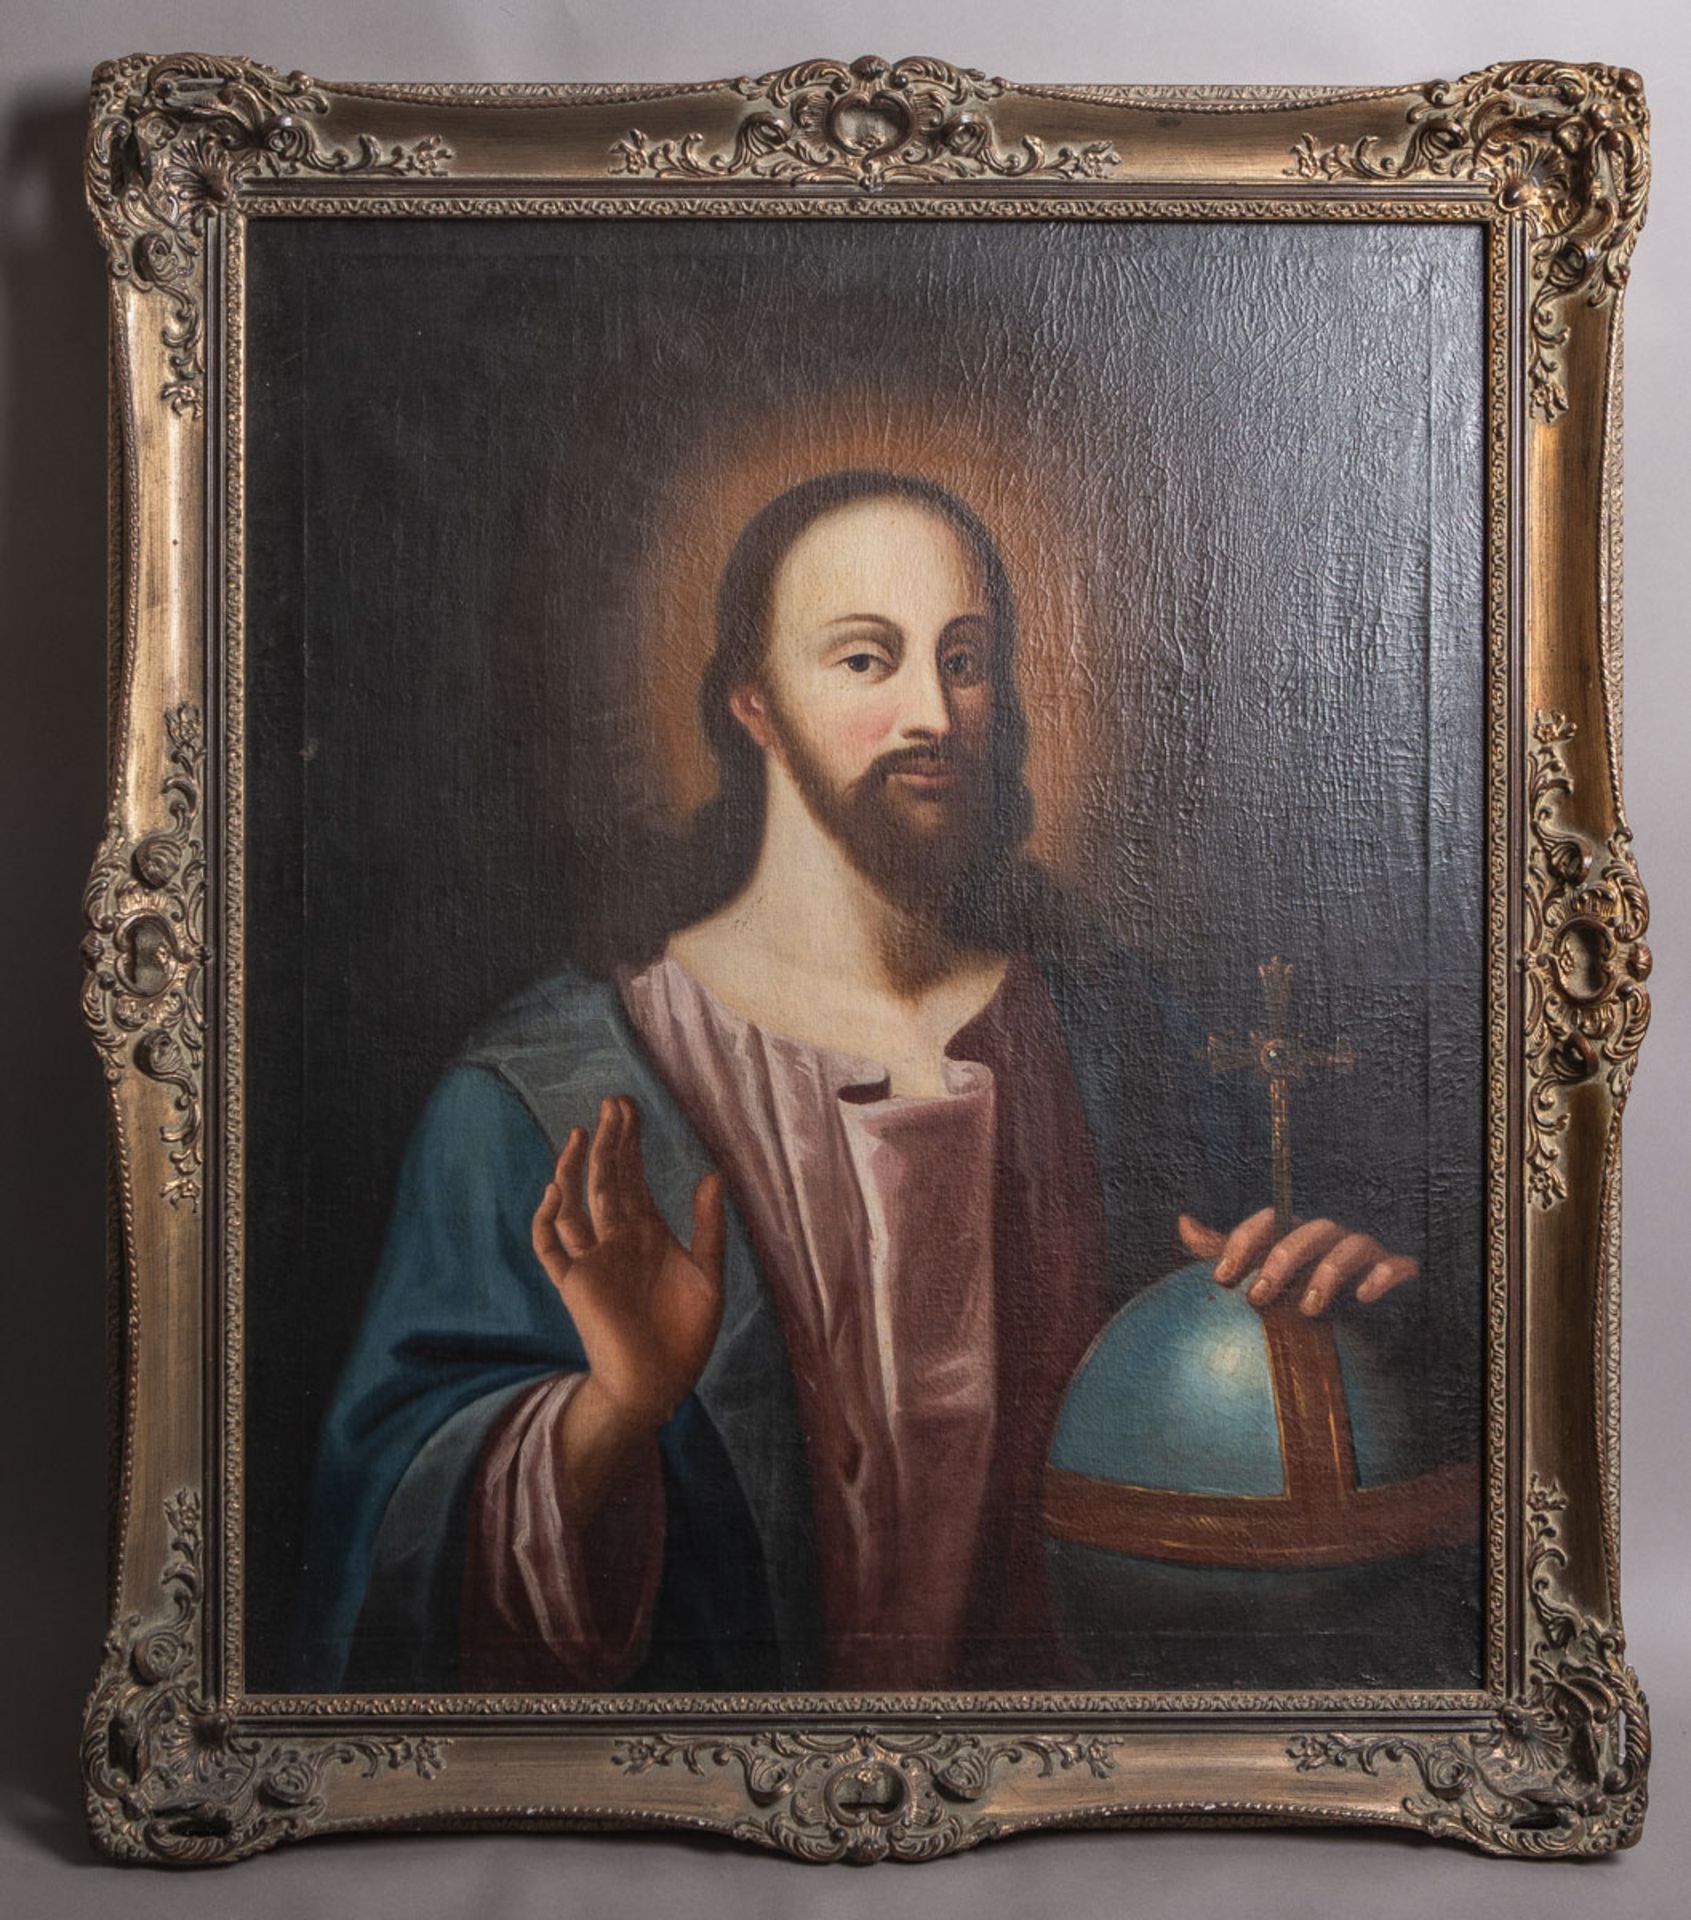 Künstler/in unbekannt (18./19. Jh.), Cristo Salvatore mit kreuztragender Weltkugel